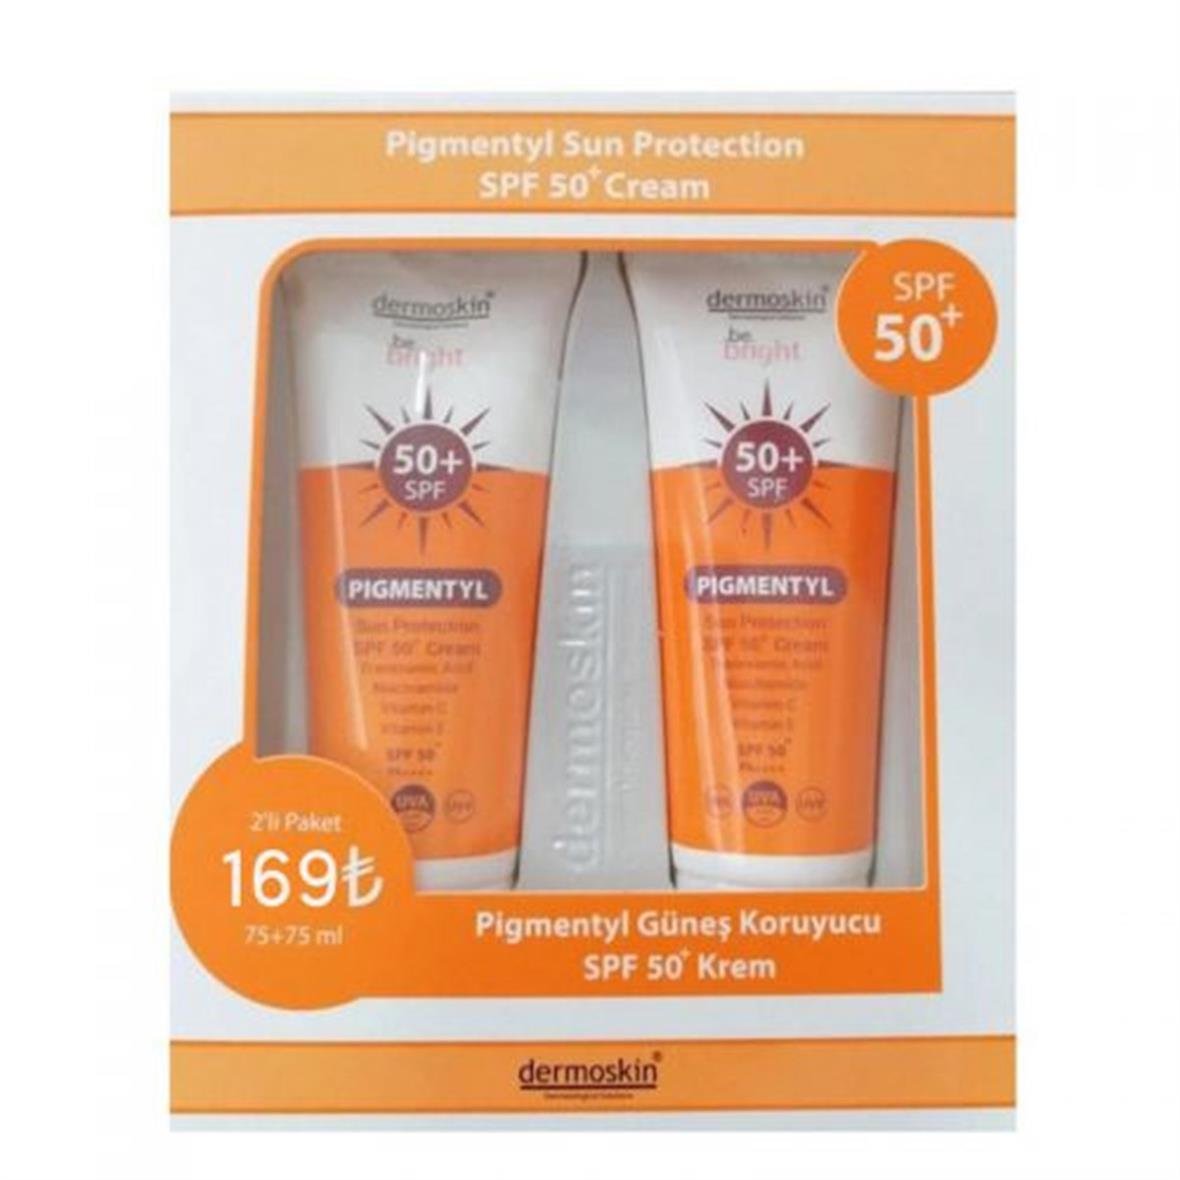 Dermoskin Pigmentyl Sun Protection SPF50+ Cream 75ml | İkili Paket  Eczasepeti.com'da En Uygun Fiyatlar ve Yorumlar